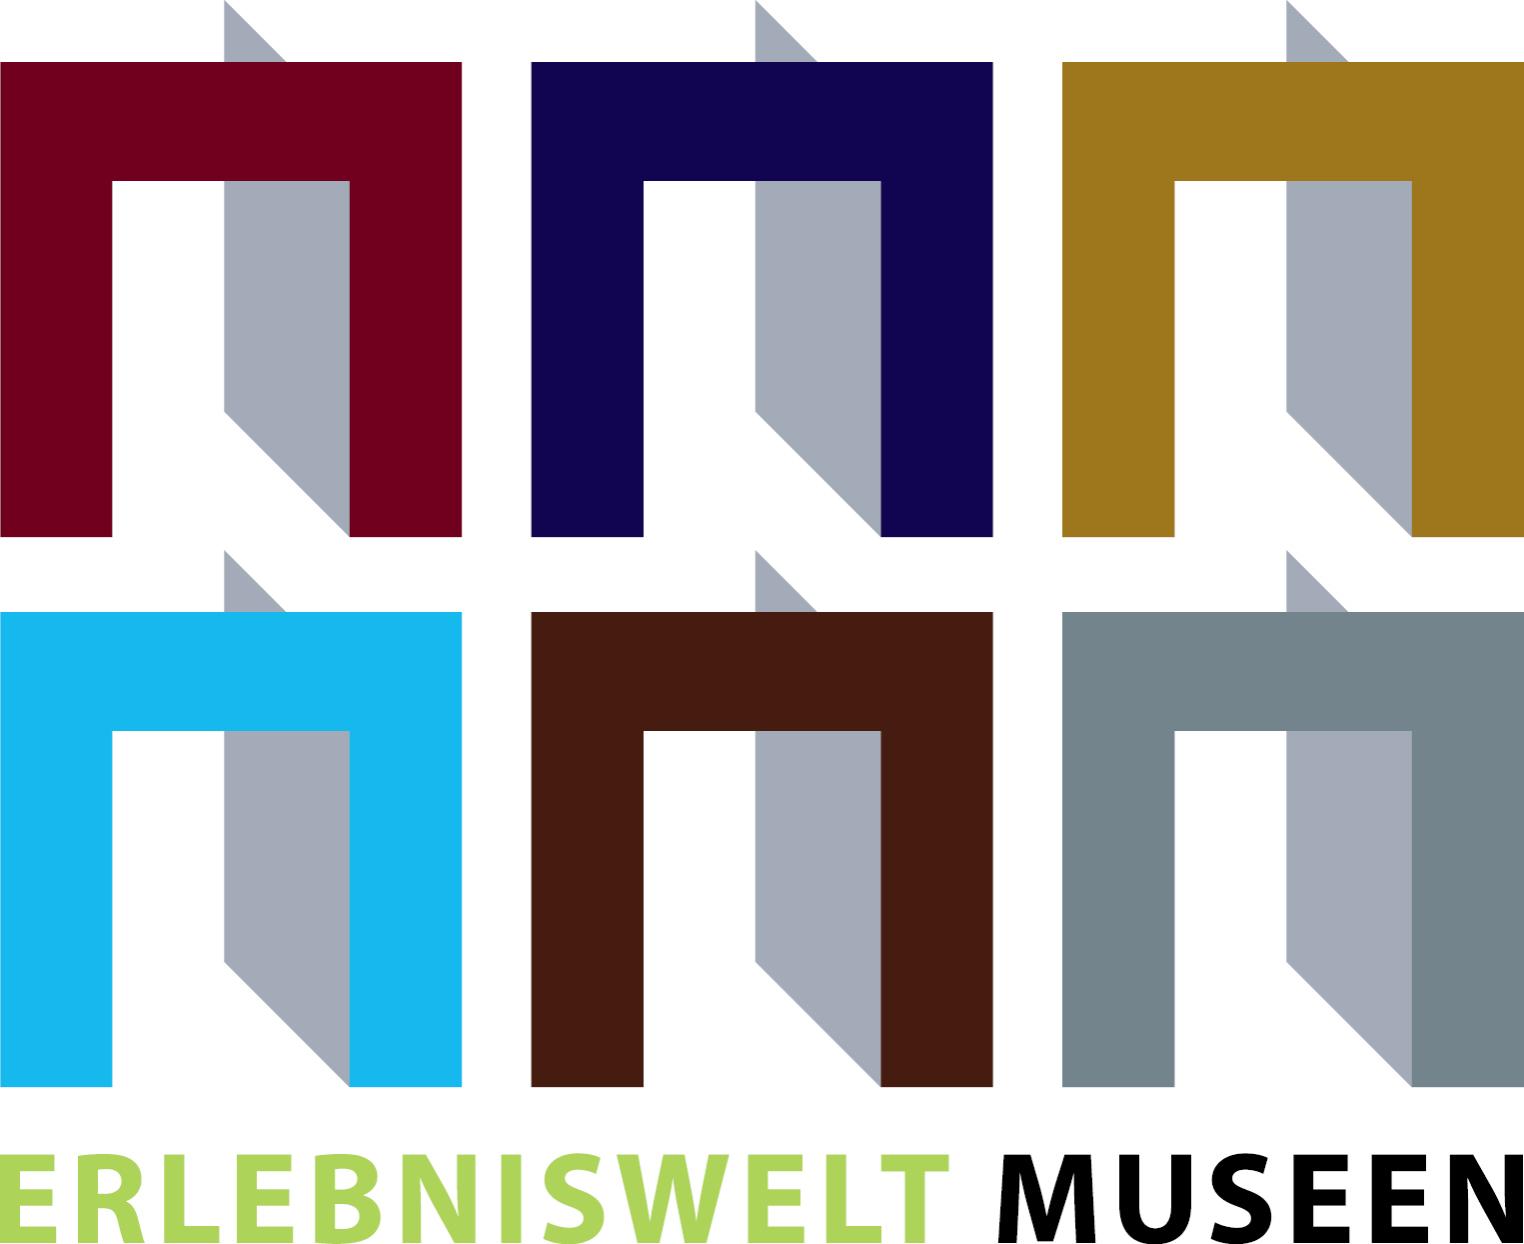 Erlebniswelt Museen e.V.